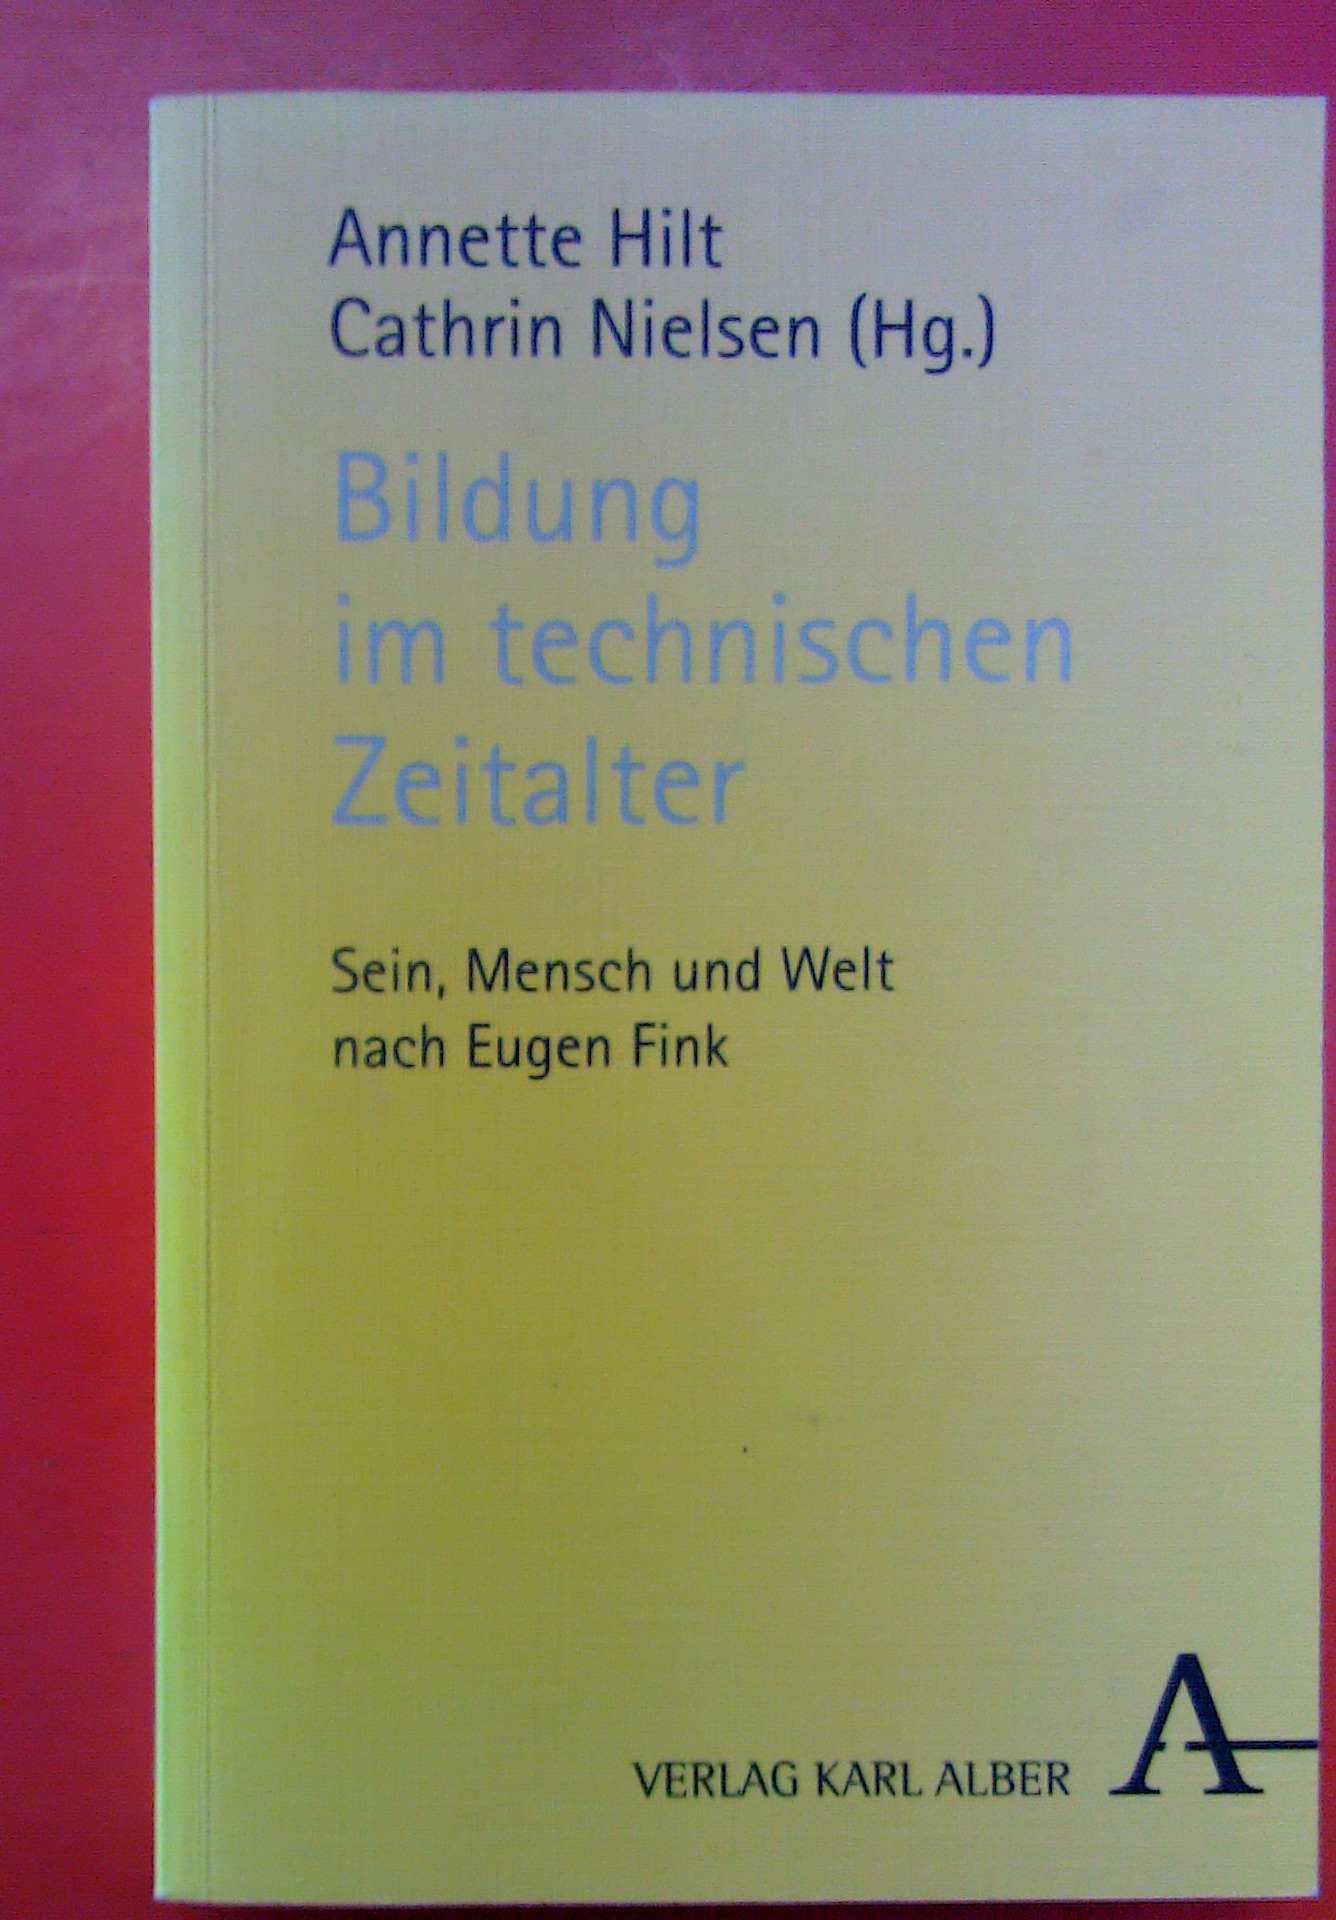 Bildung im technischen Zeitalter - Sein, Mensch und Welt nach Eugen Fink - Hrsg: Annette Hilt / Cathrin Nielsen